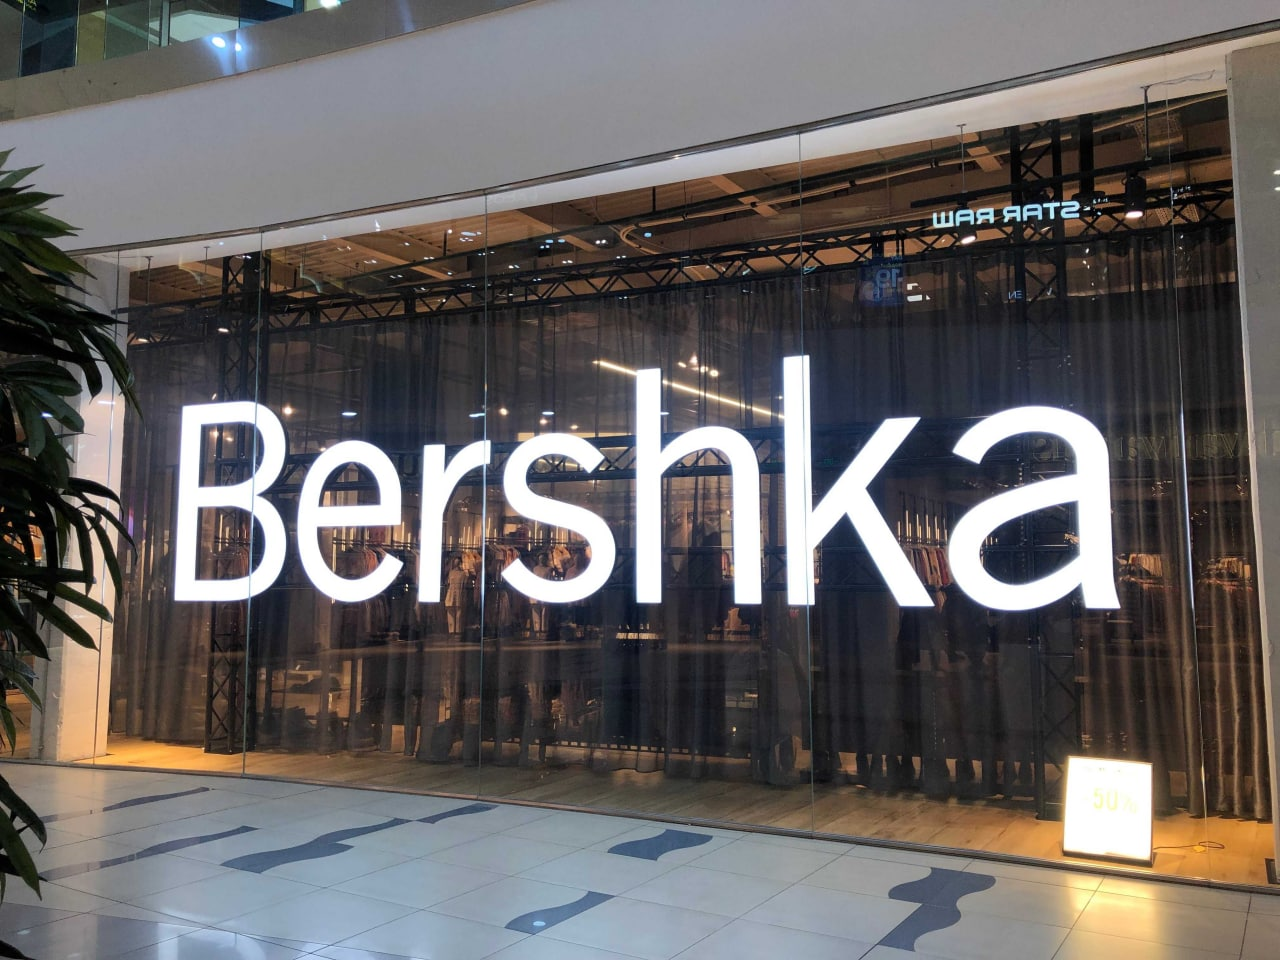 brand #bershka_27_11_1 – Telegraph